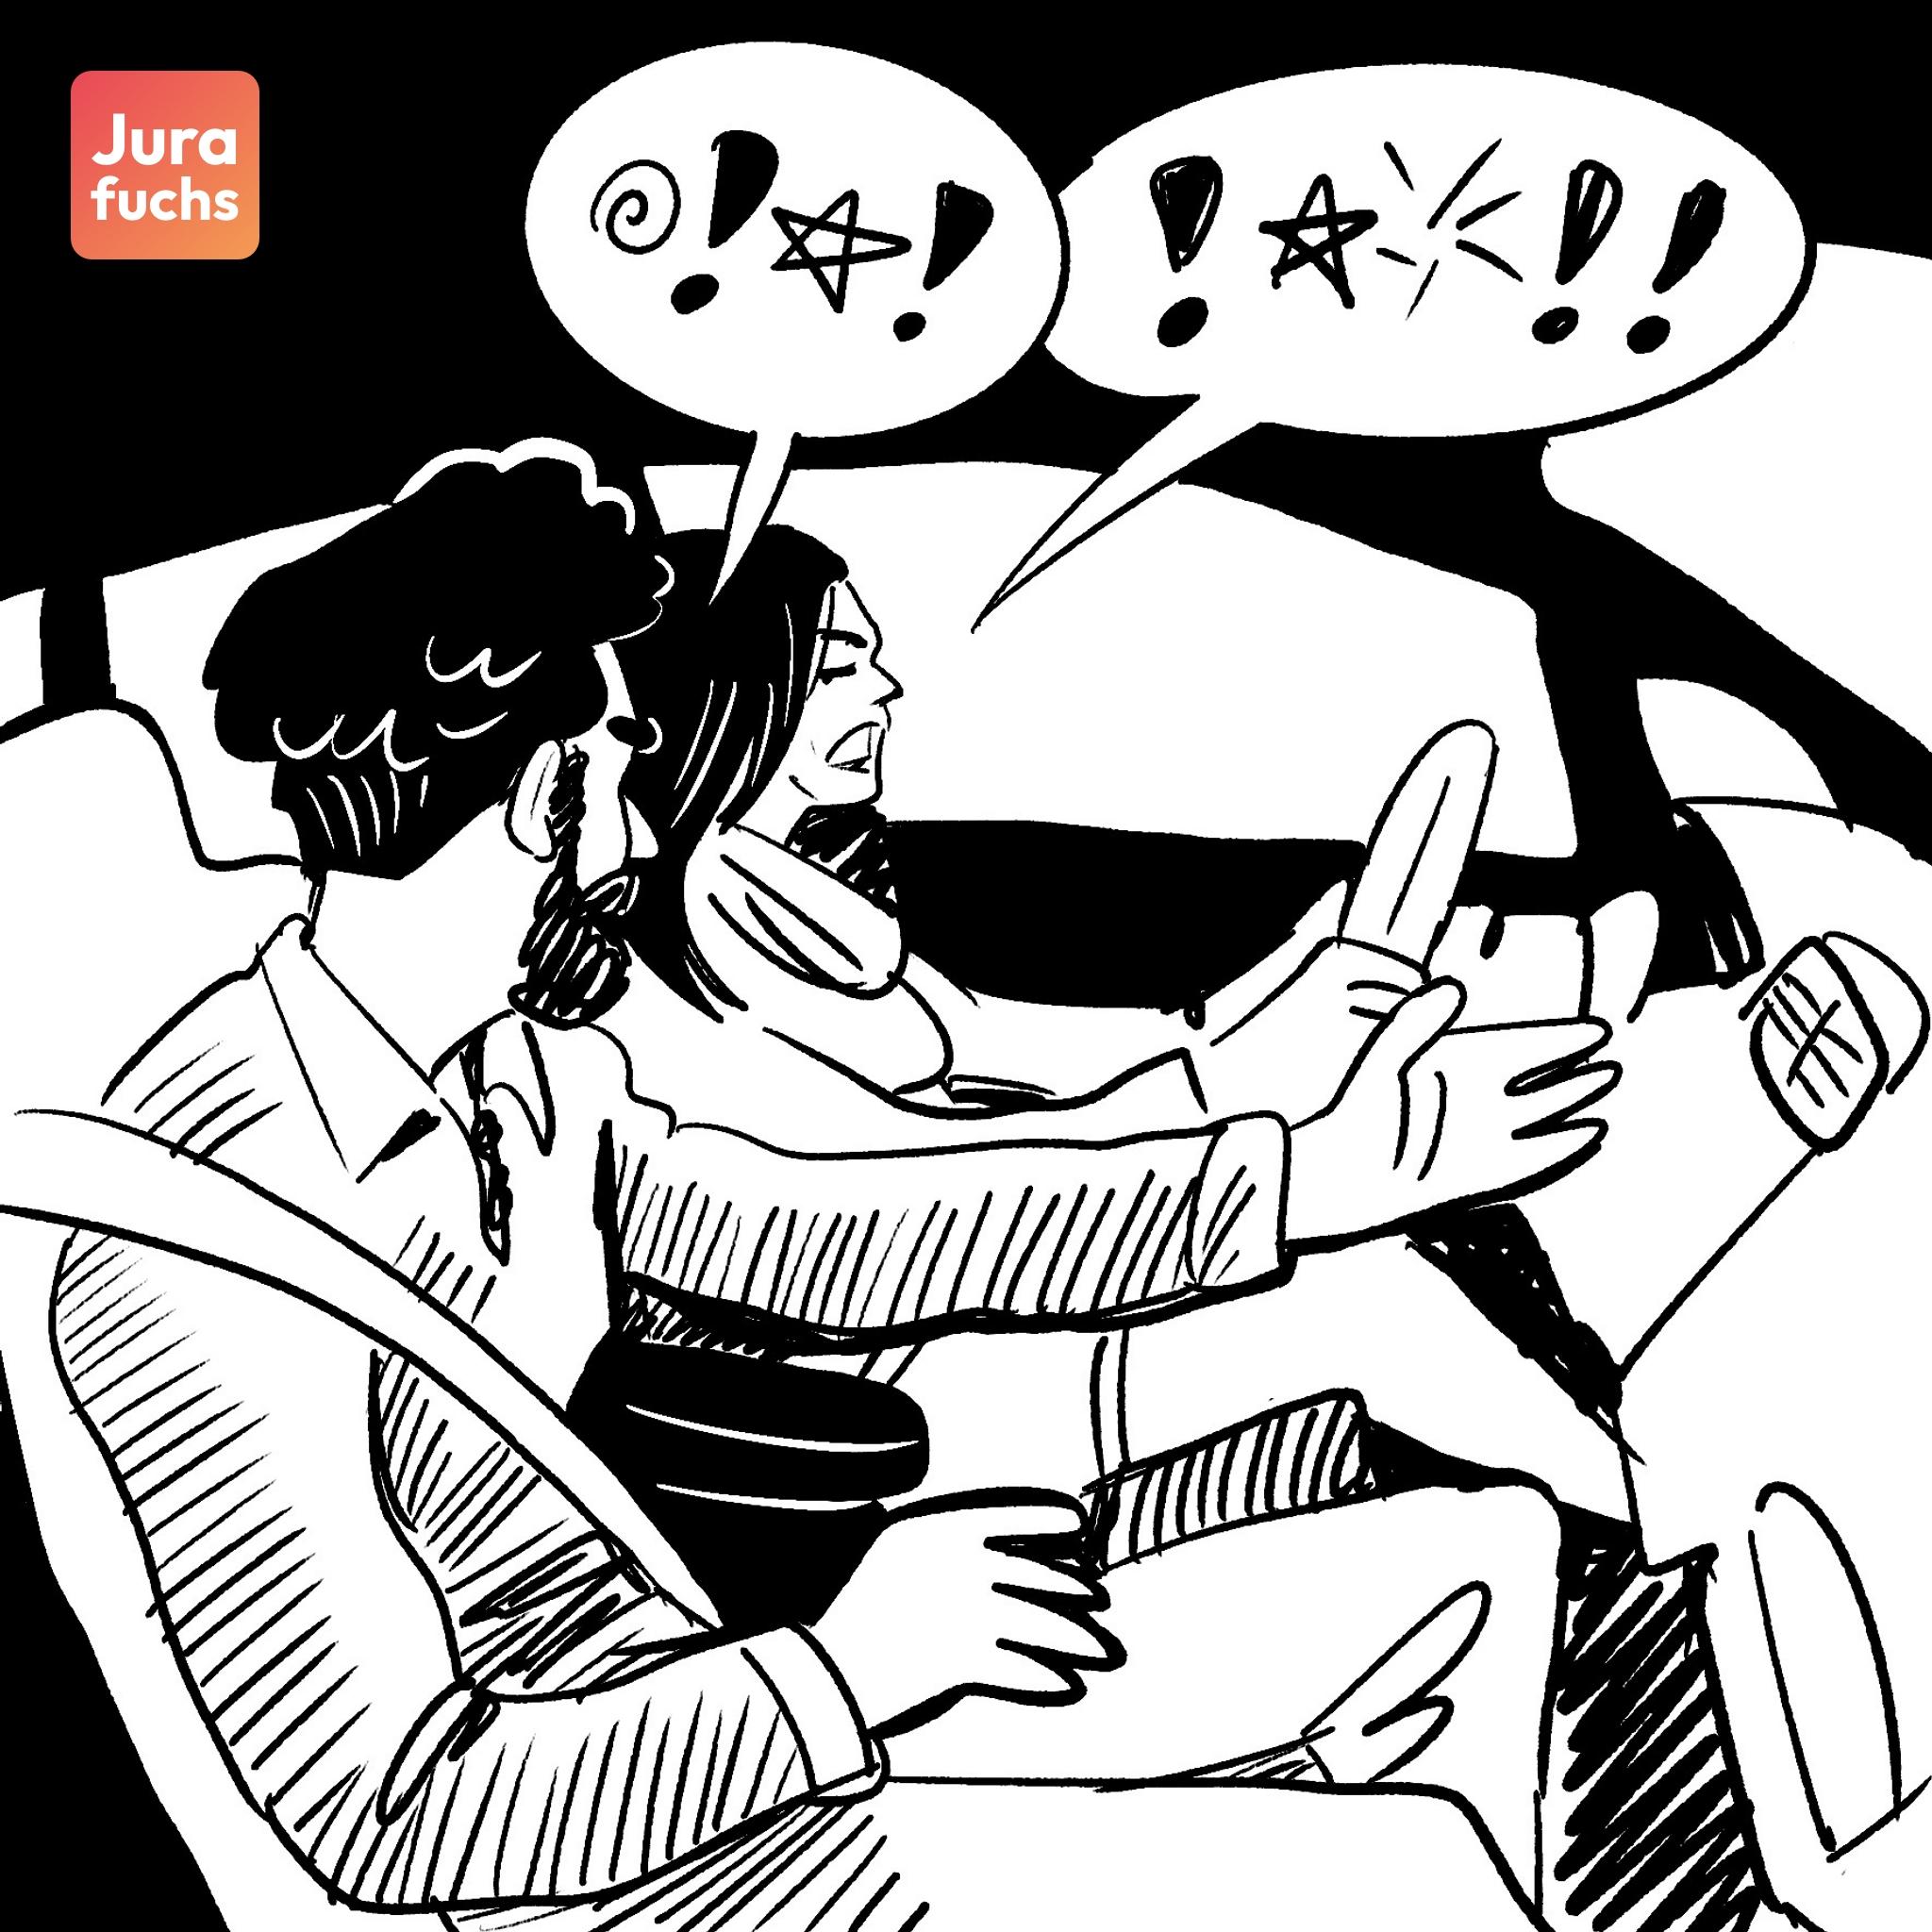 Jurafuchs Illustration: A und F sitzen in einem Auto und streiten sich. 